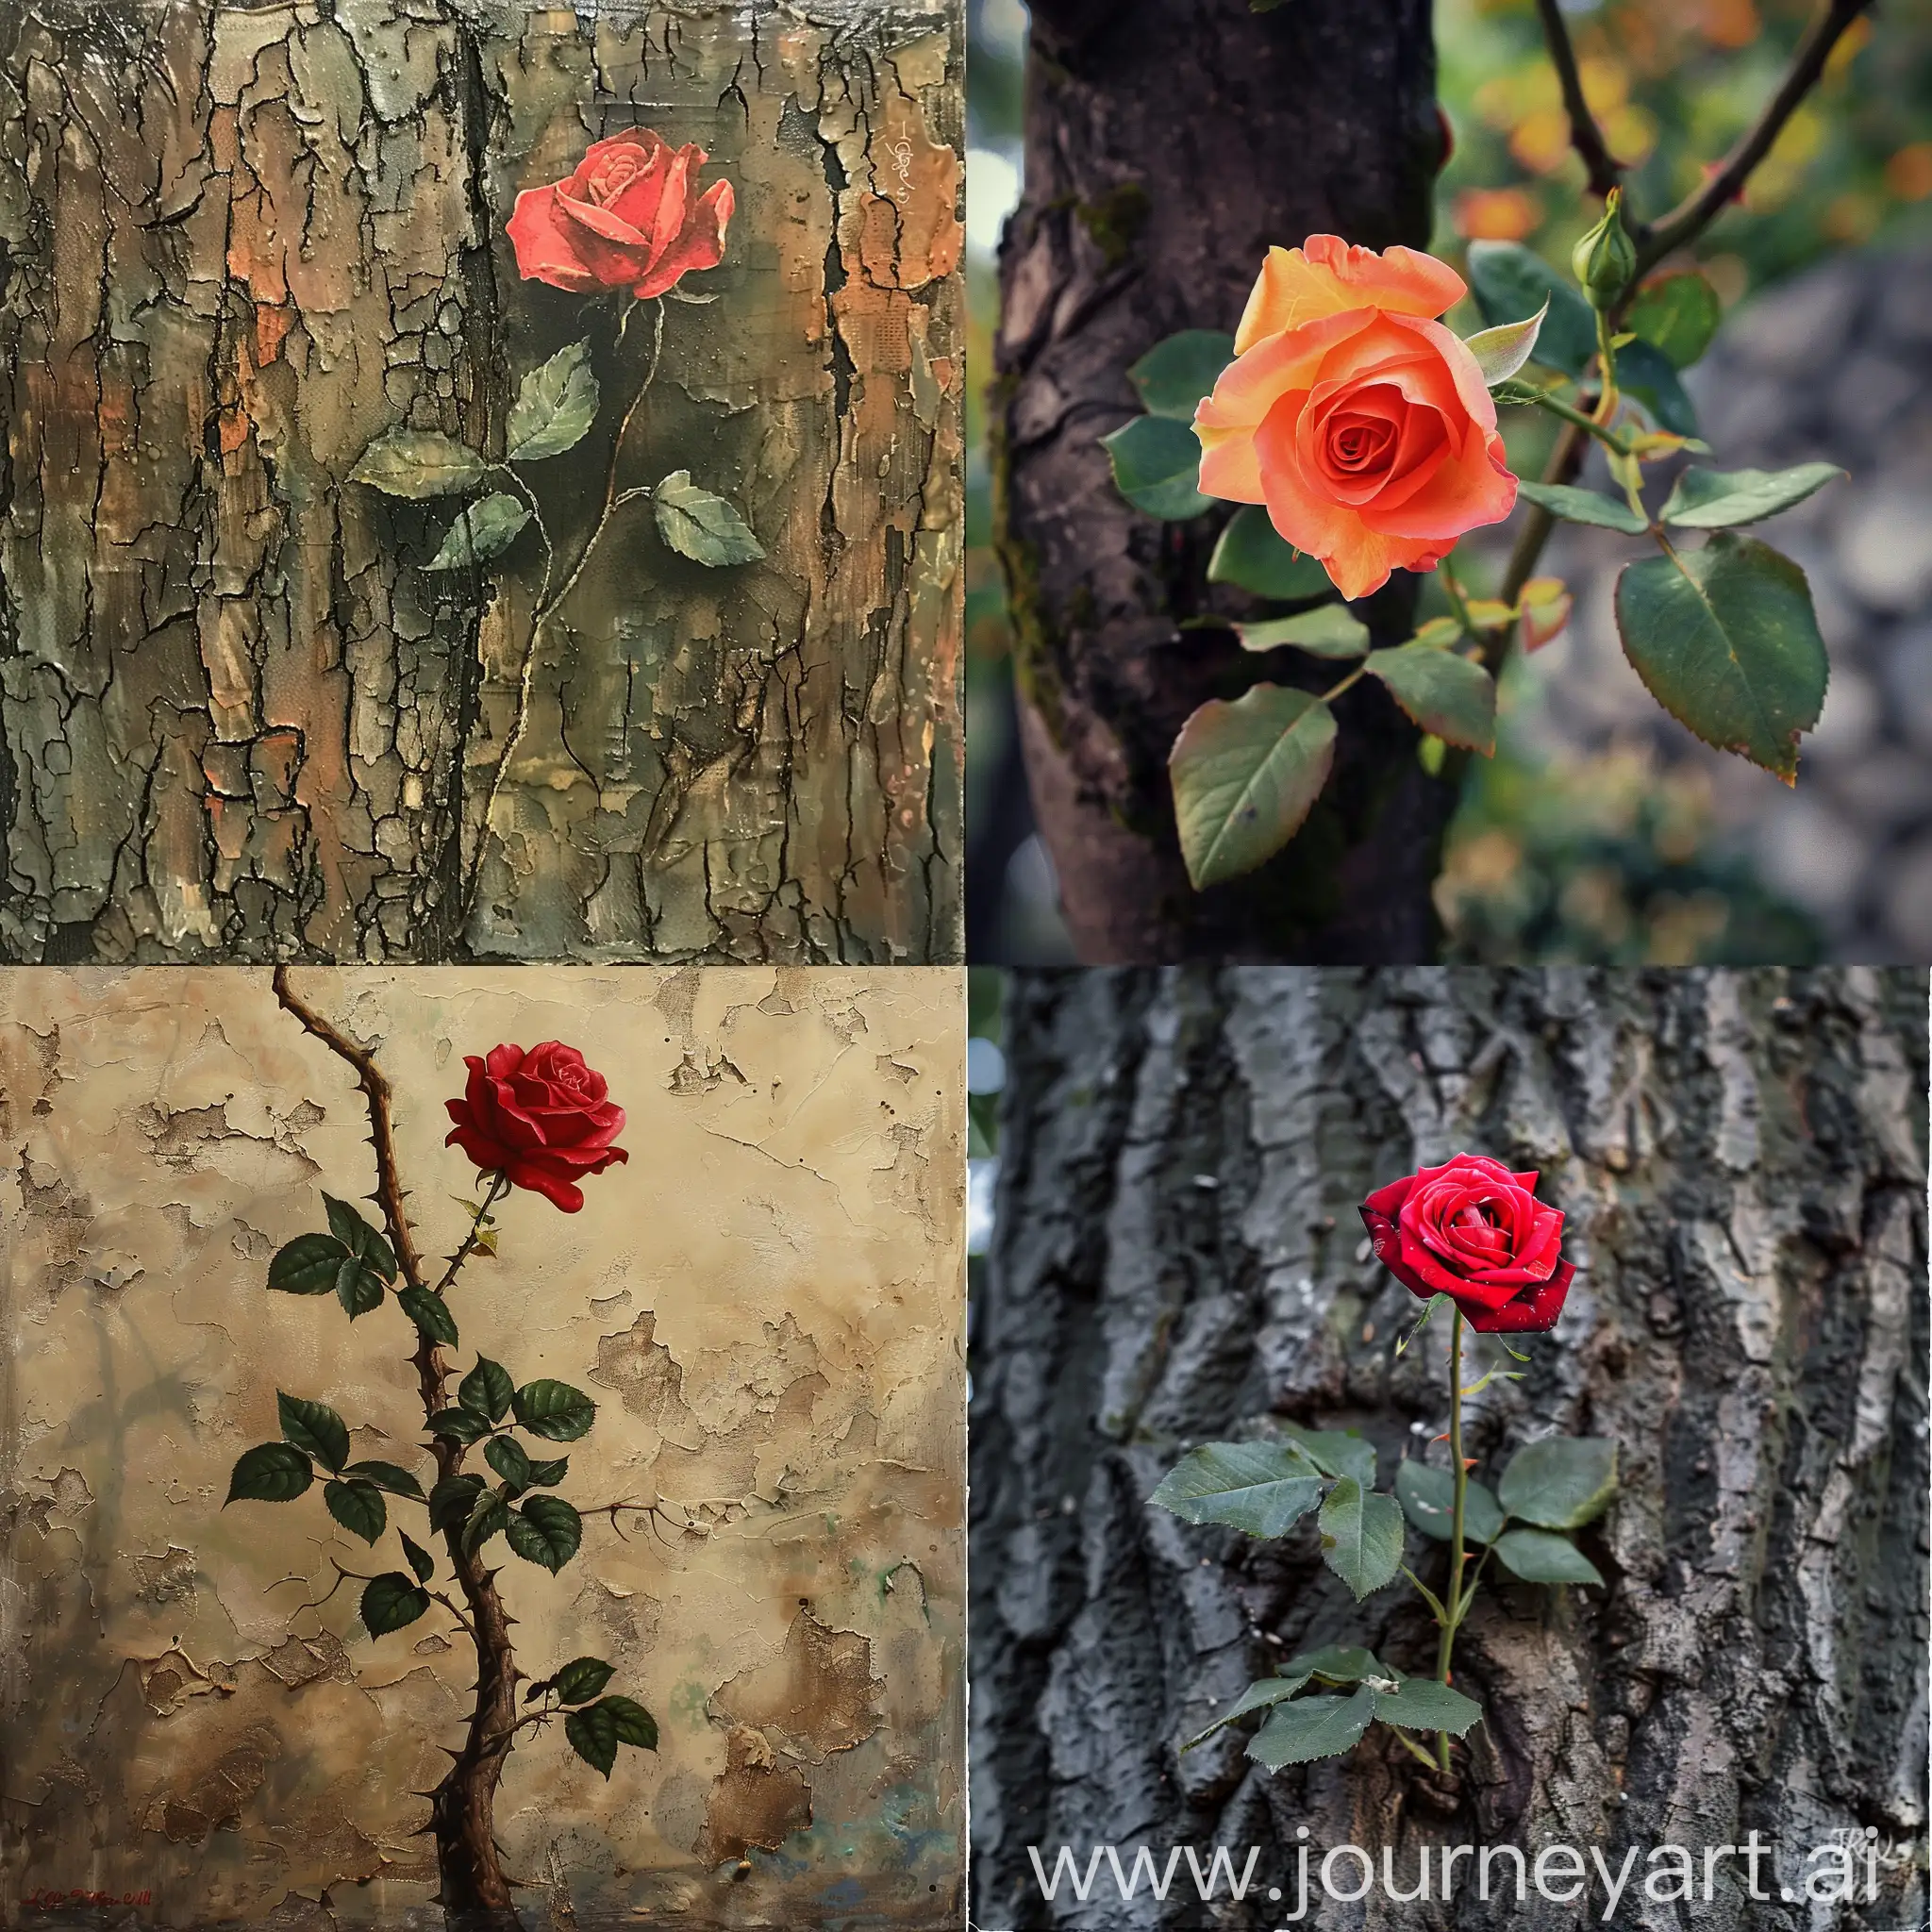 Elegant-Rose-Dance-on-Tree-Branch-in-Vibrant-Setting